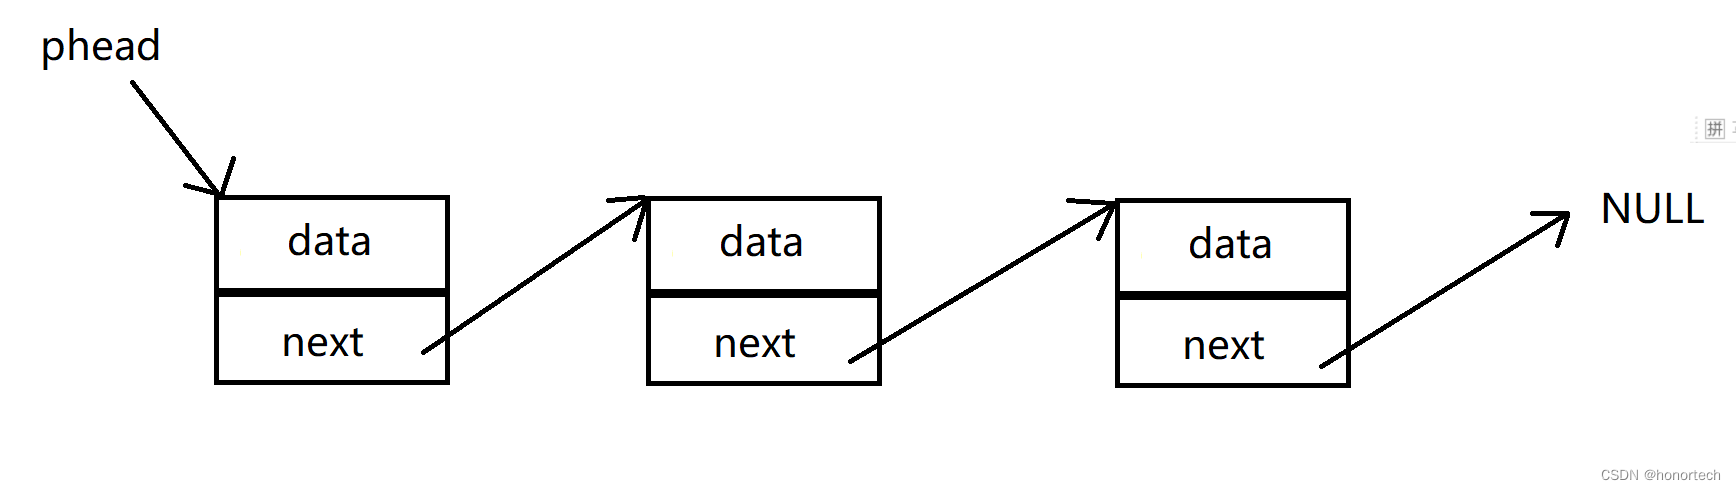 【数据结构】顺序表和链表